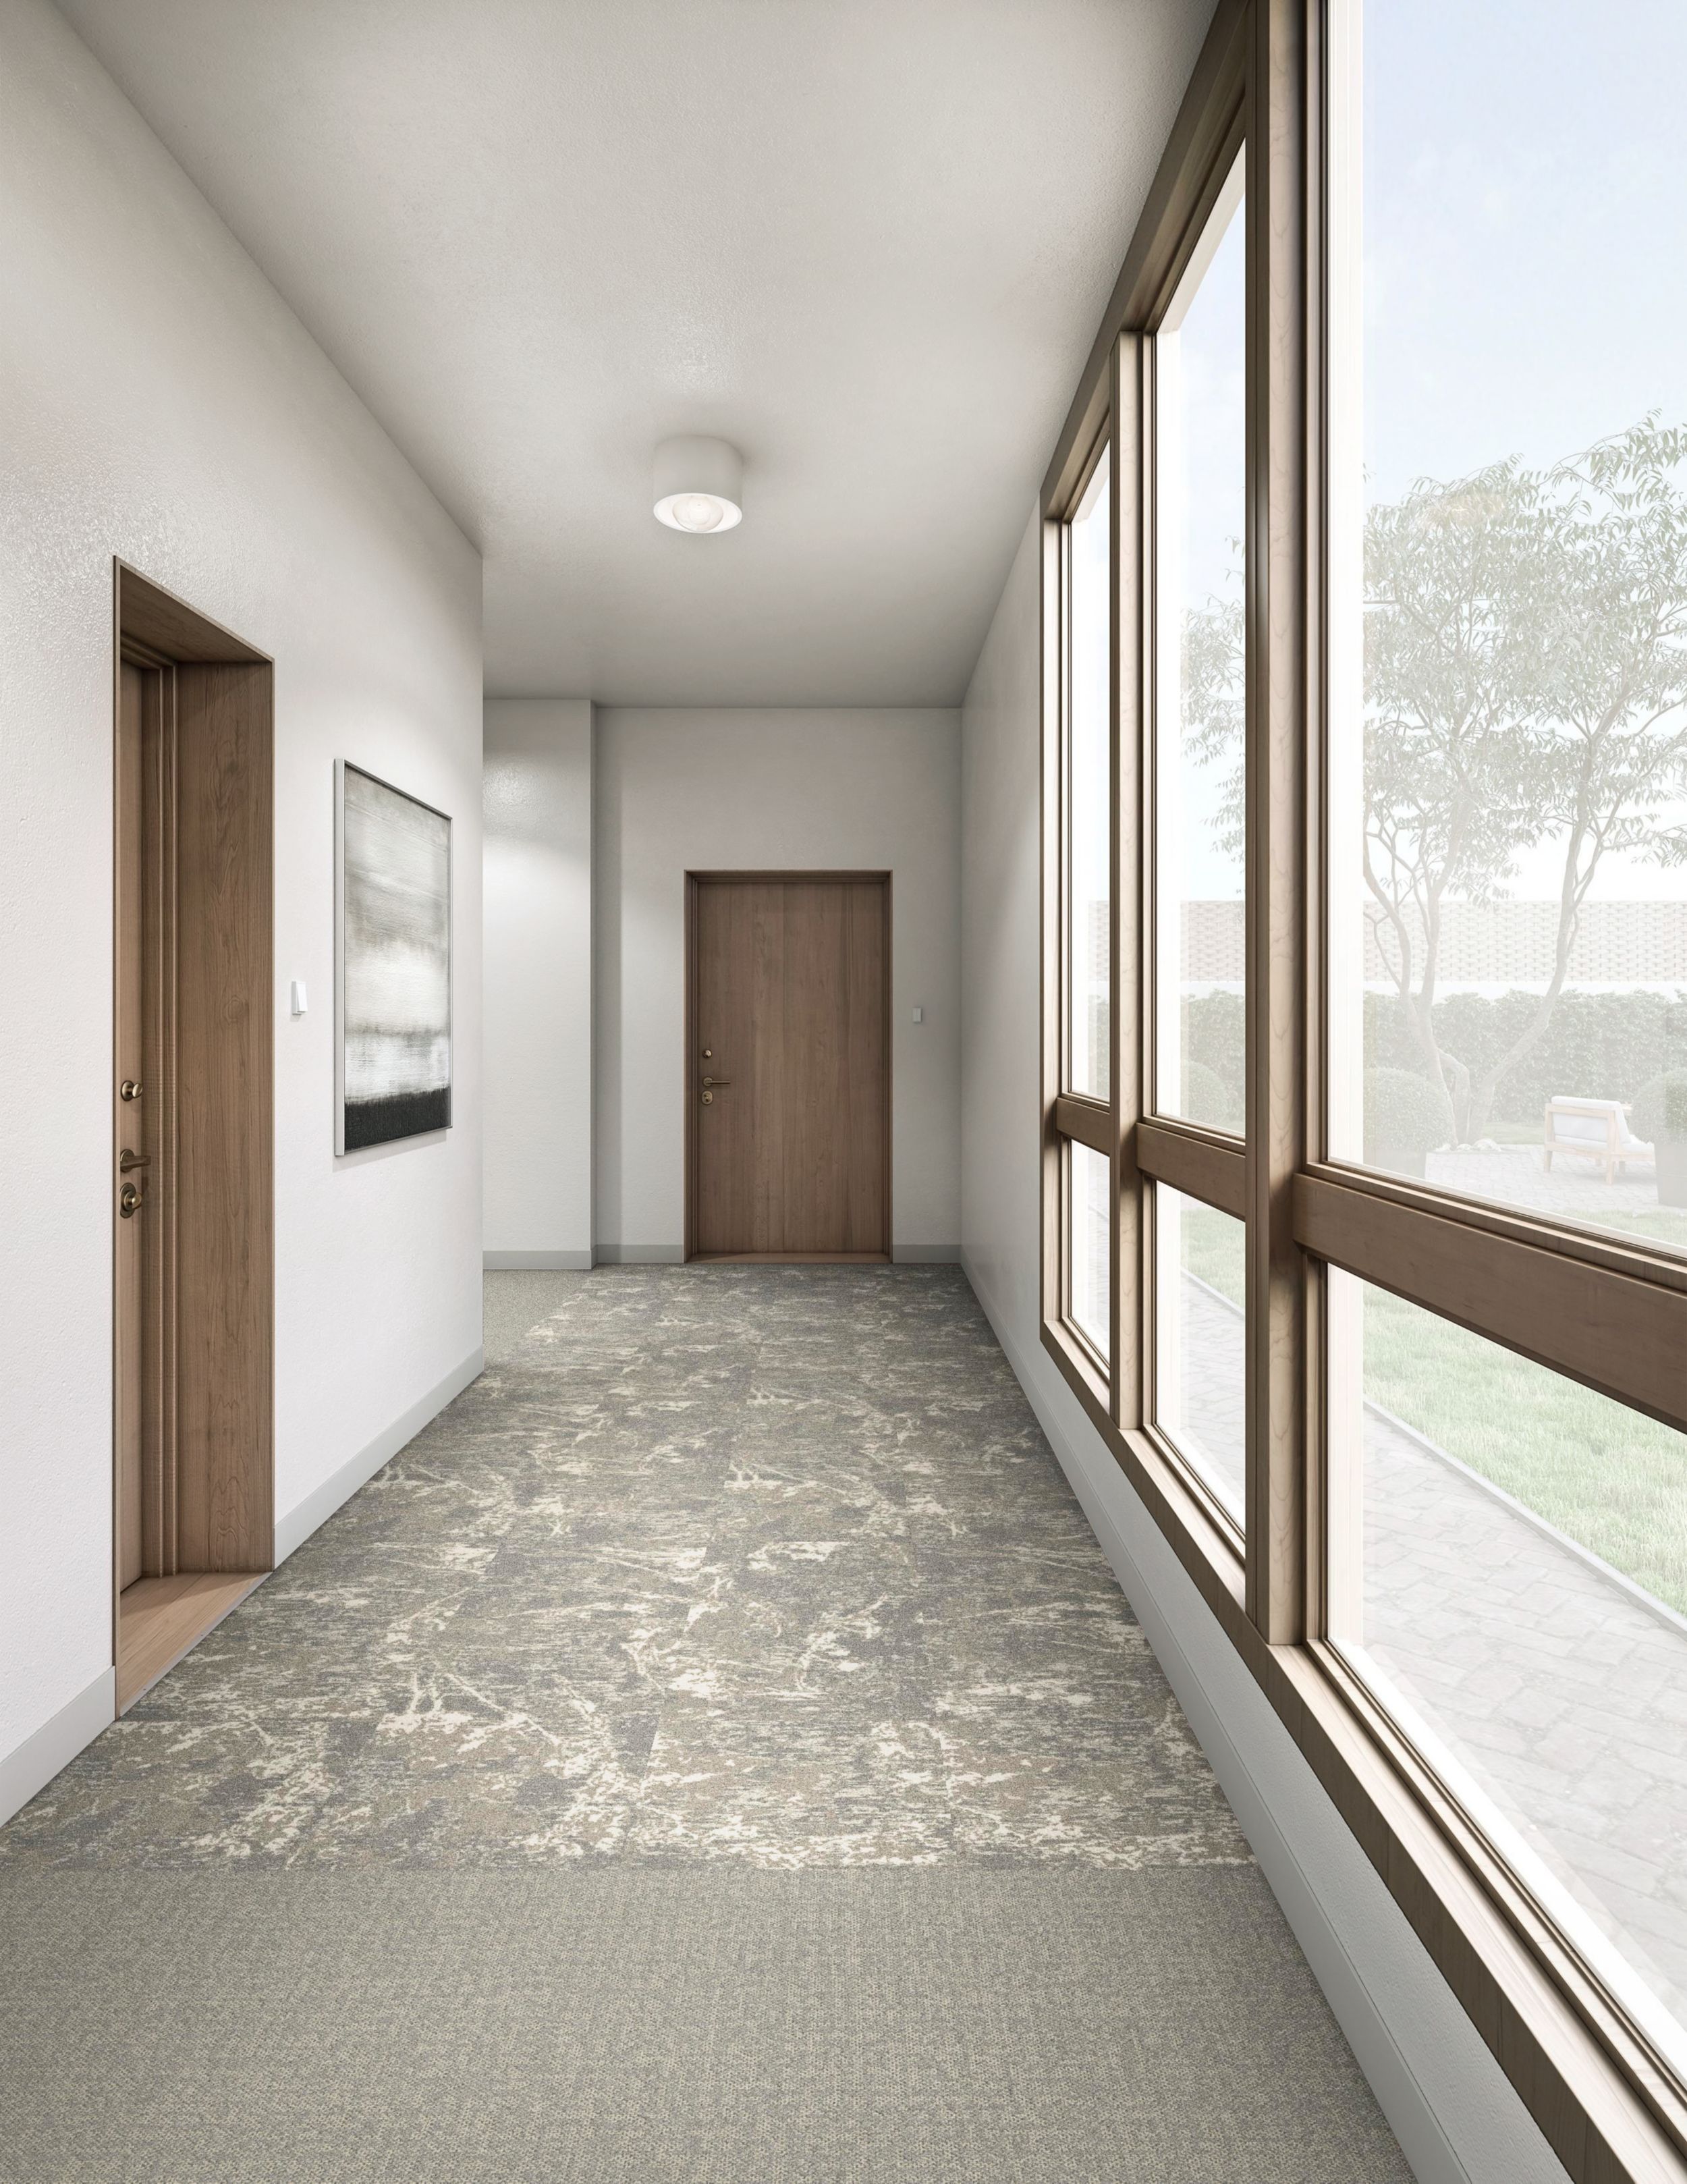 Interface Bouquet and Mirano plank carpet tile in senior housing corridor imagen número 5